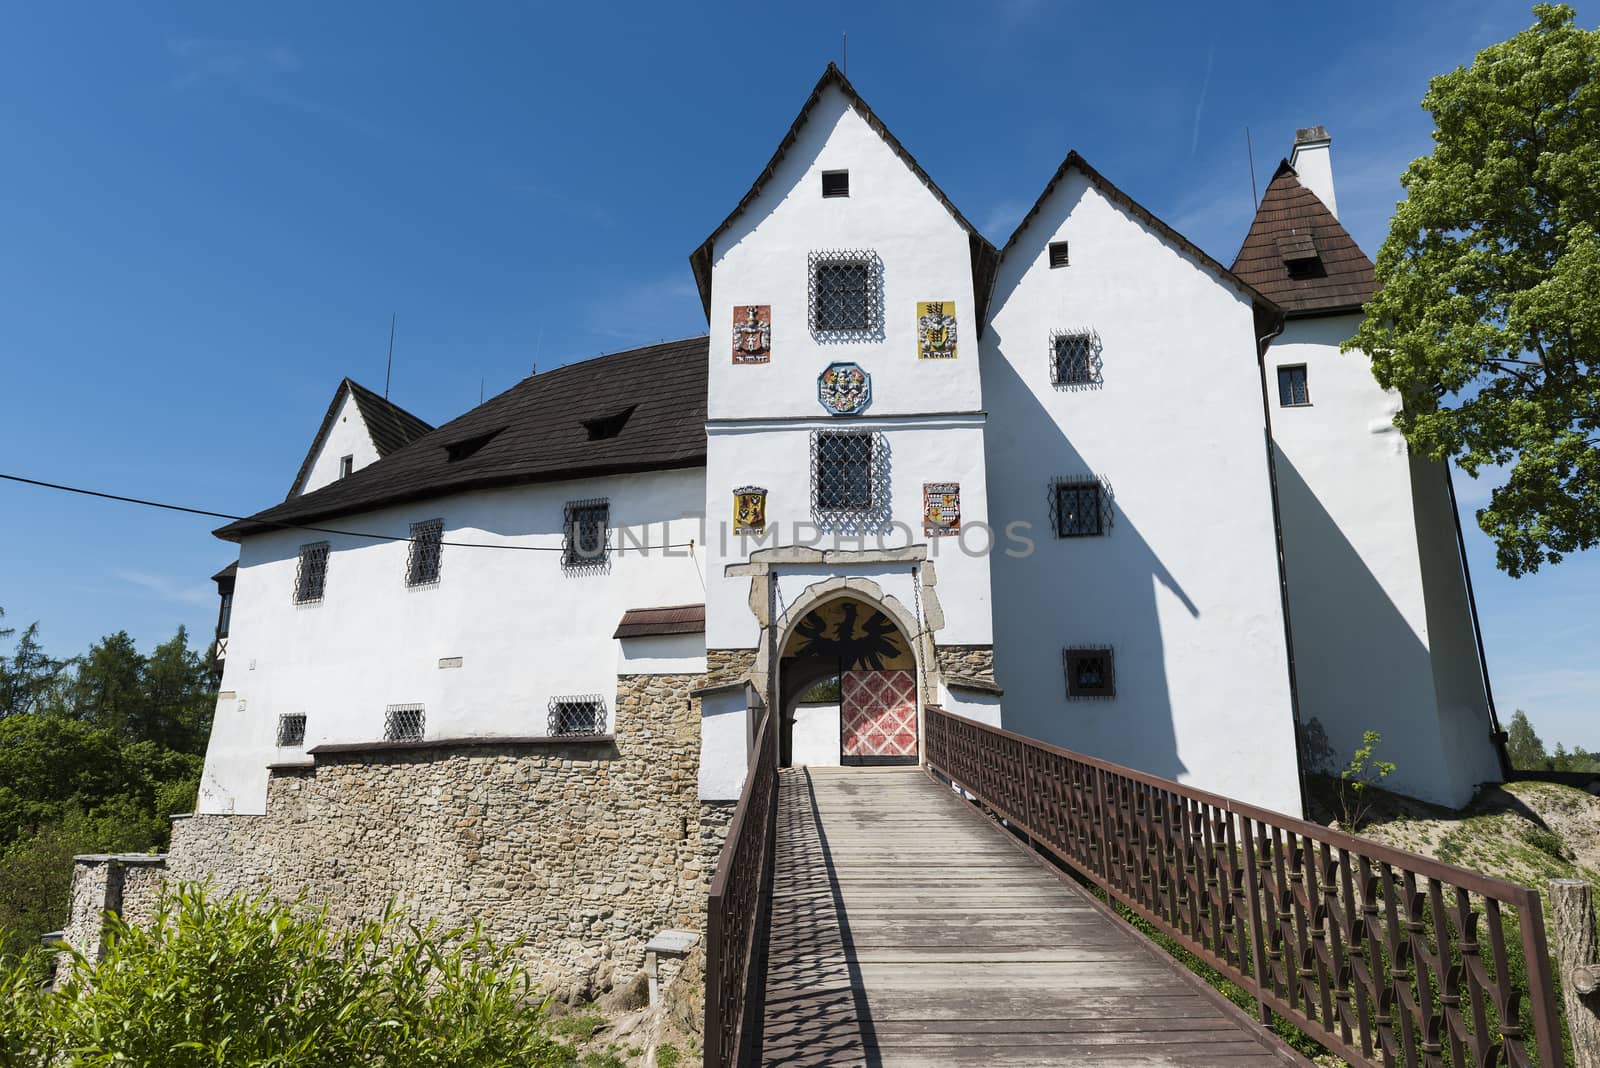 Seeberg castle near the city of Frantiskovy Lazne, Czech Republic